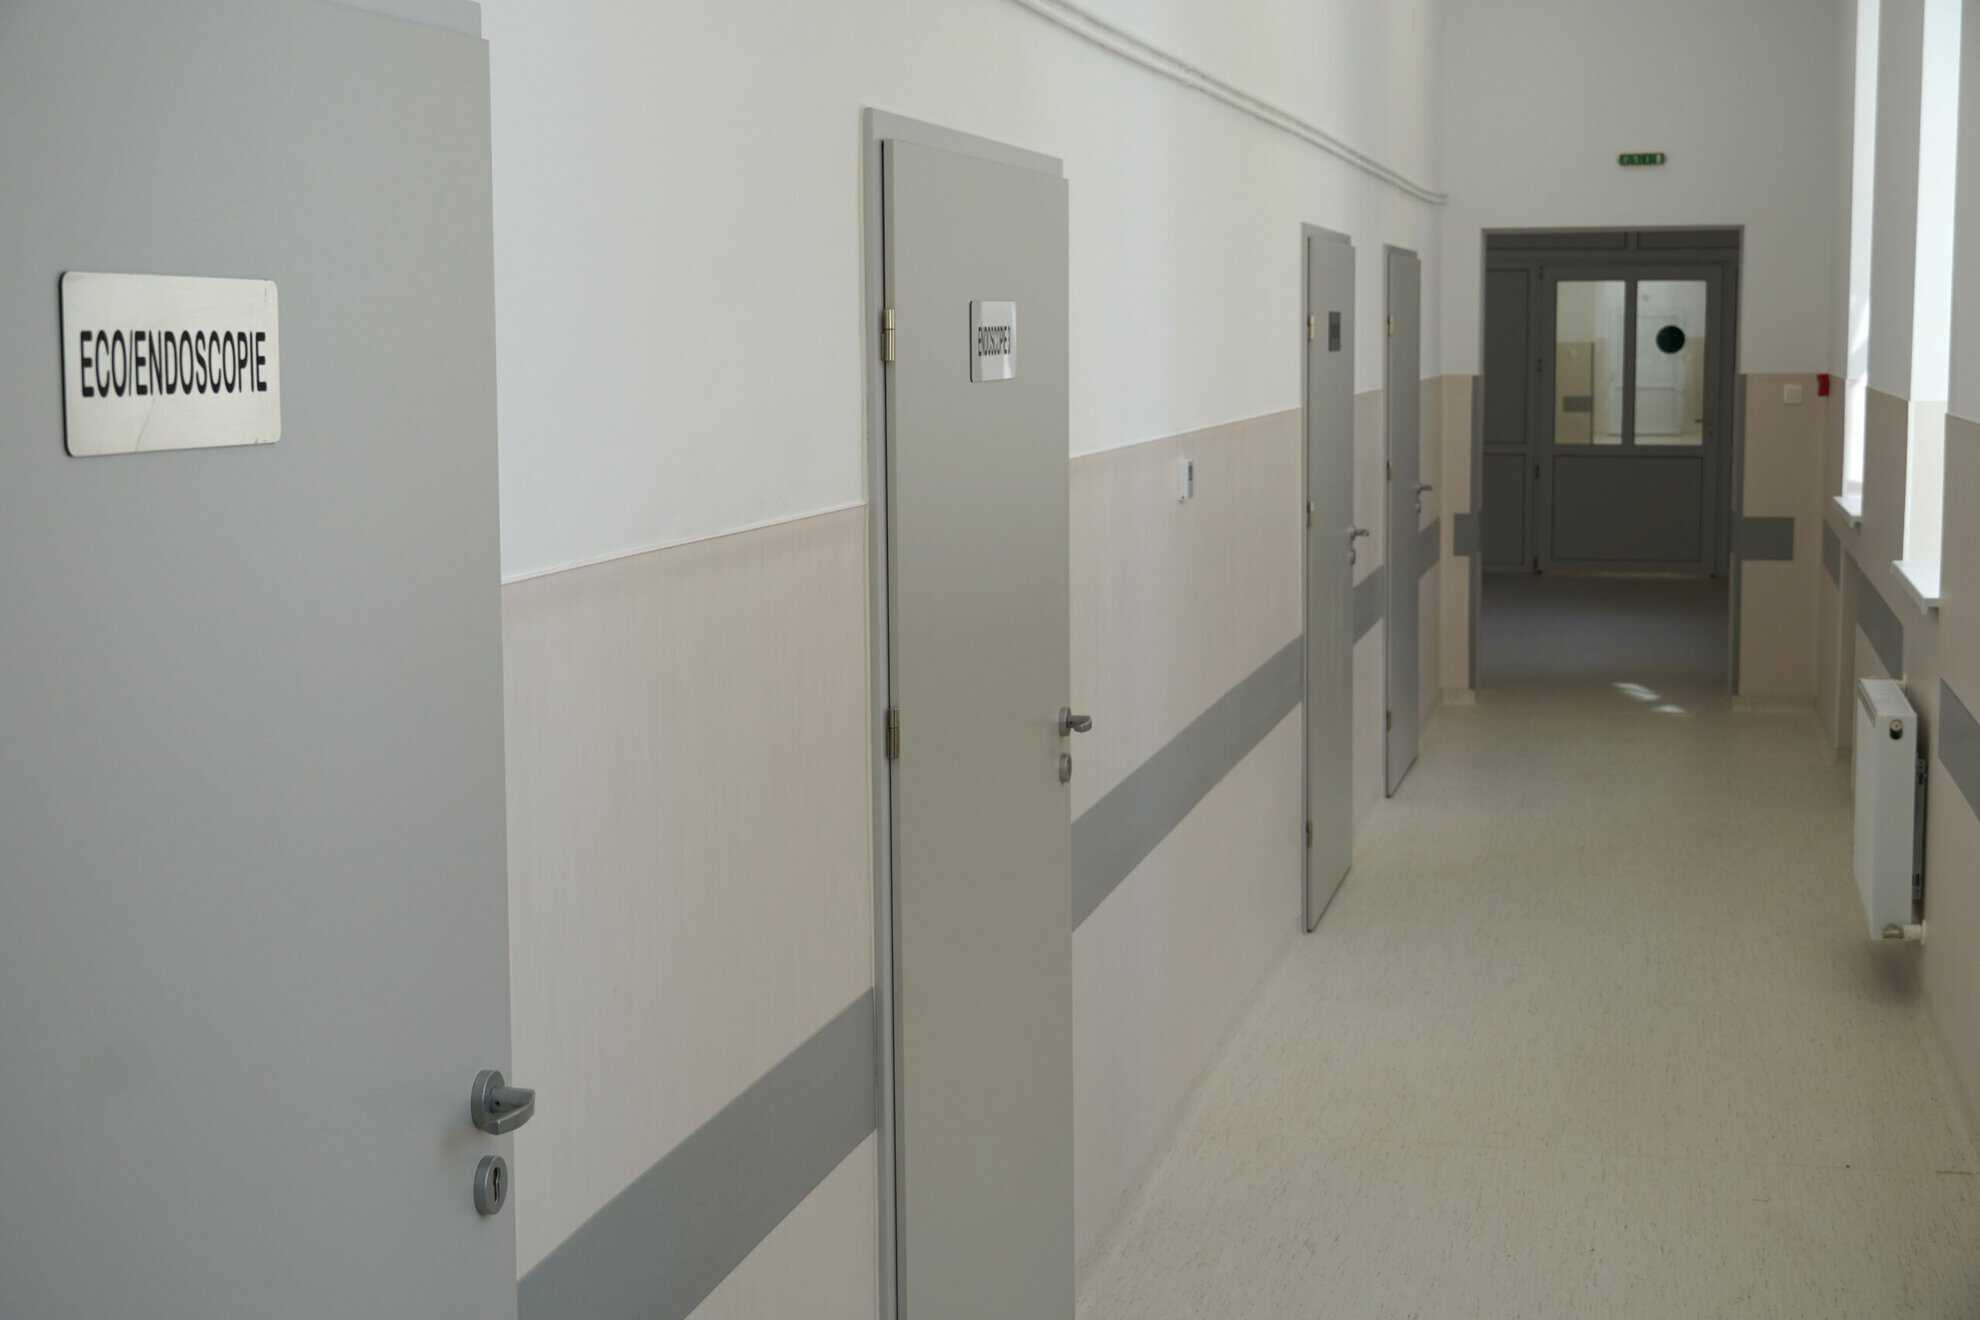 secția „chirurgie i” de la spitalul județean a fost modernizată. toate saloanele sunt climatizate și au acces direct la grupurile sanitare